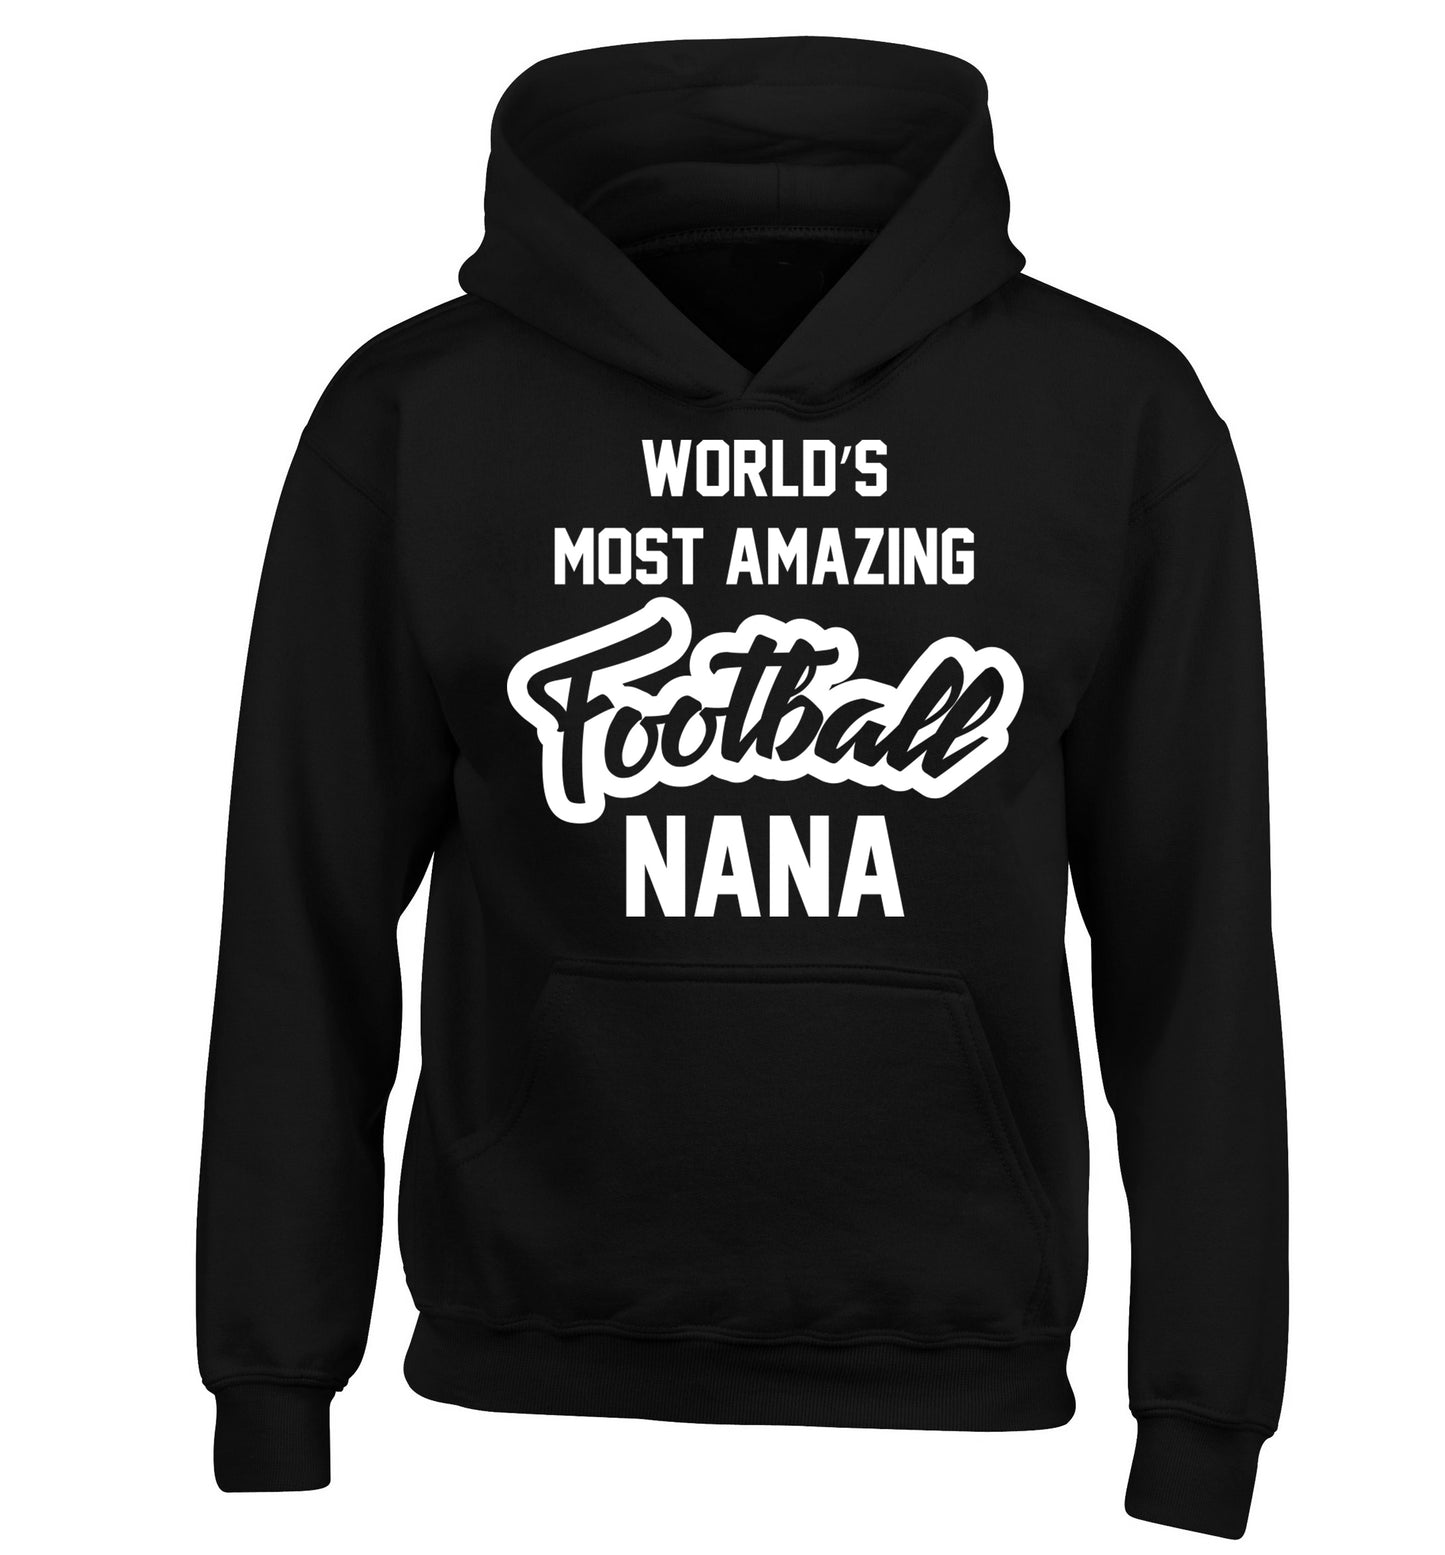 Worlds most amazing football nana children's black hoodie 12-14 Years